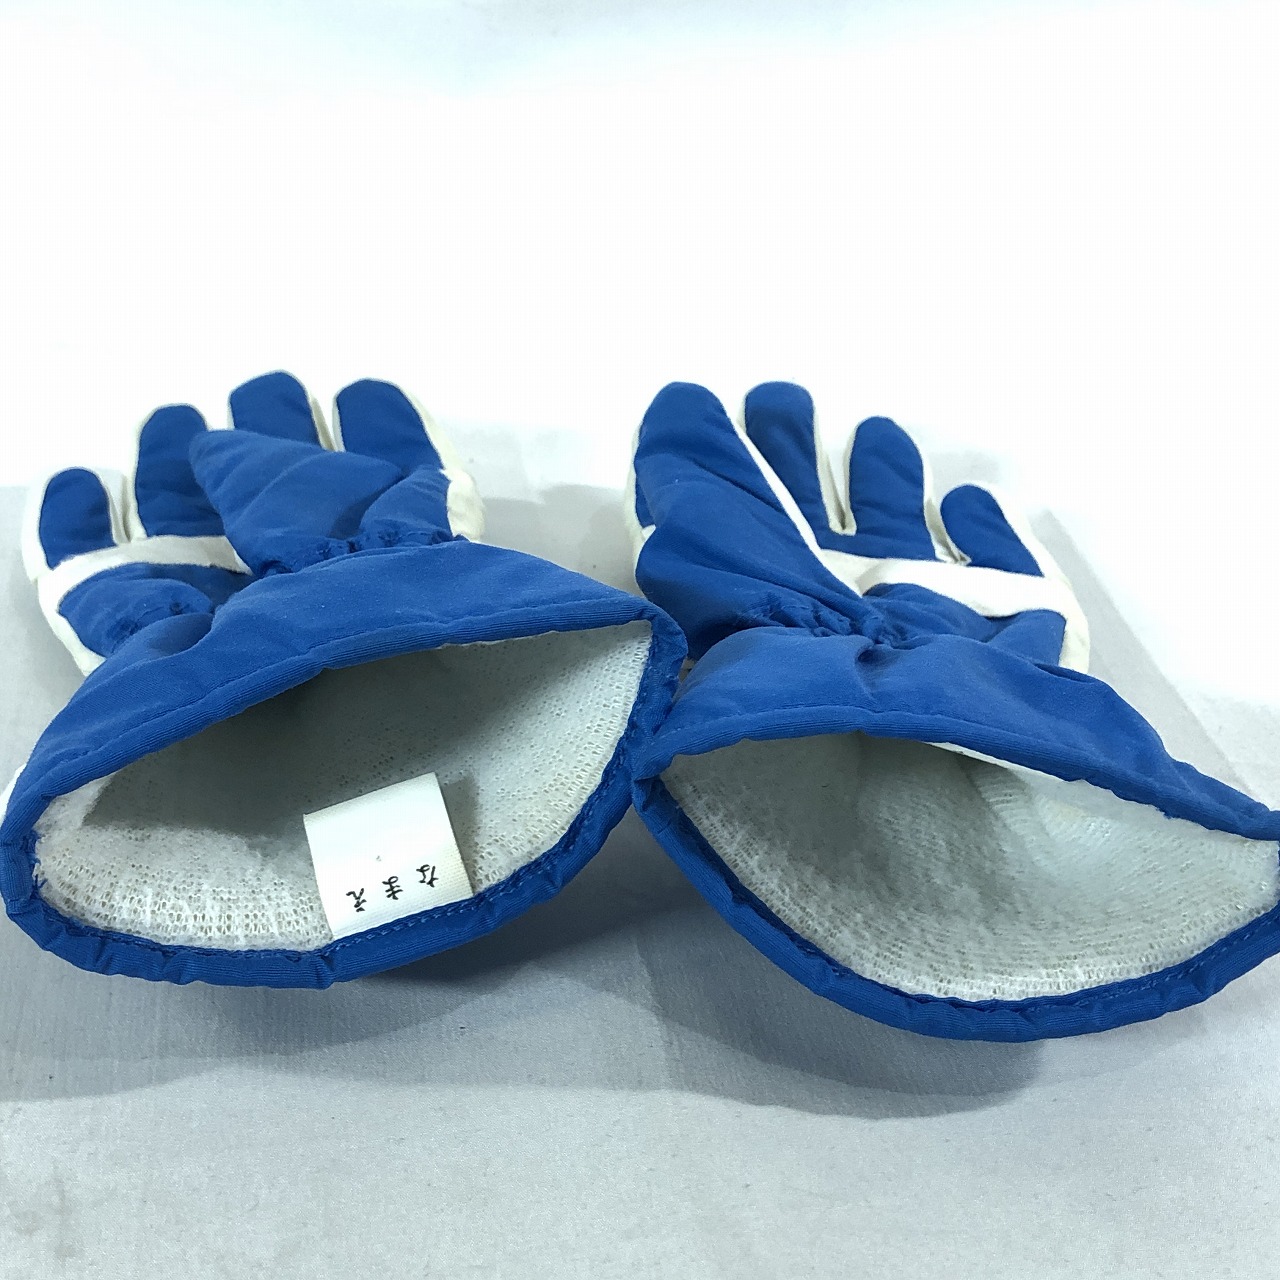  No-brand Kids мужчина обратная сторона ворсистый snow перчатка перчатки синий белый прекрасный товар стоимость доставки 185 иен 